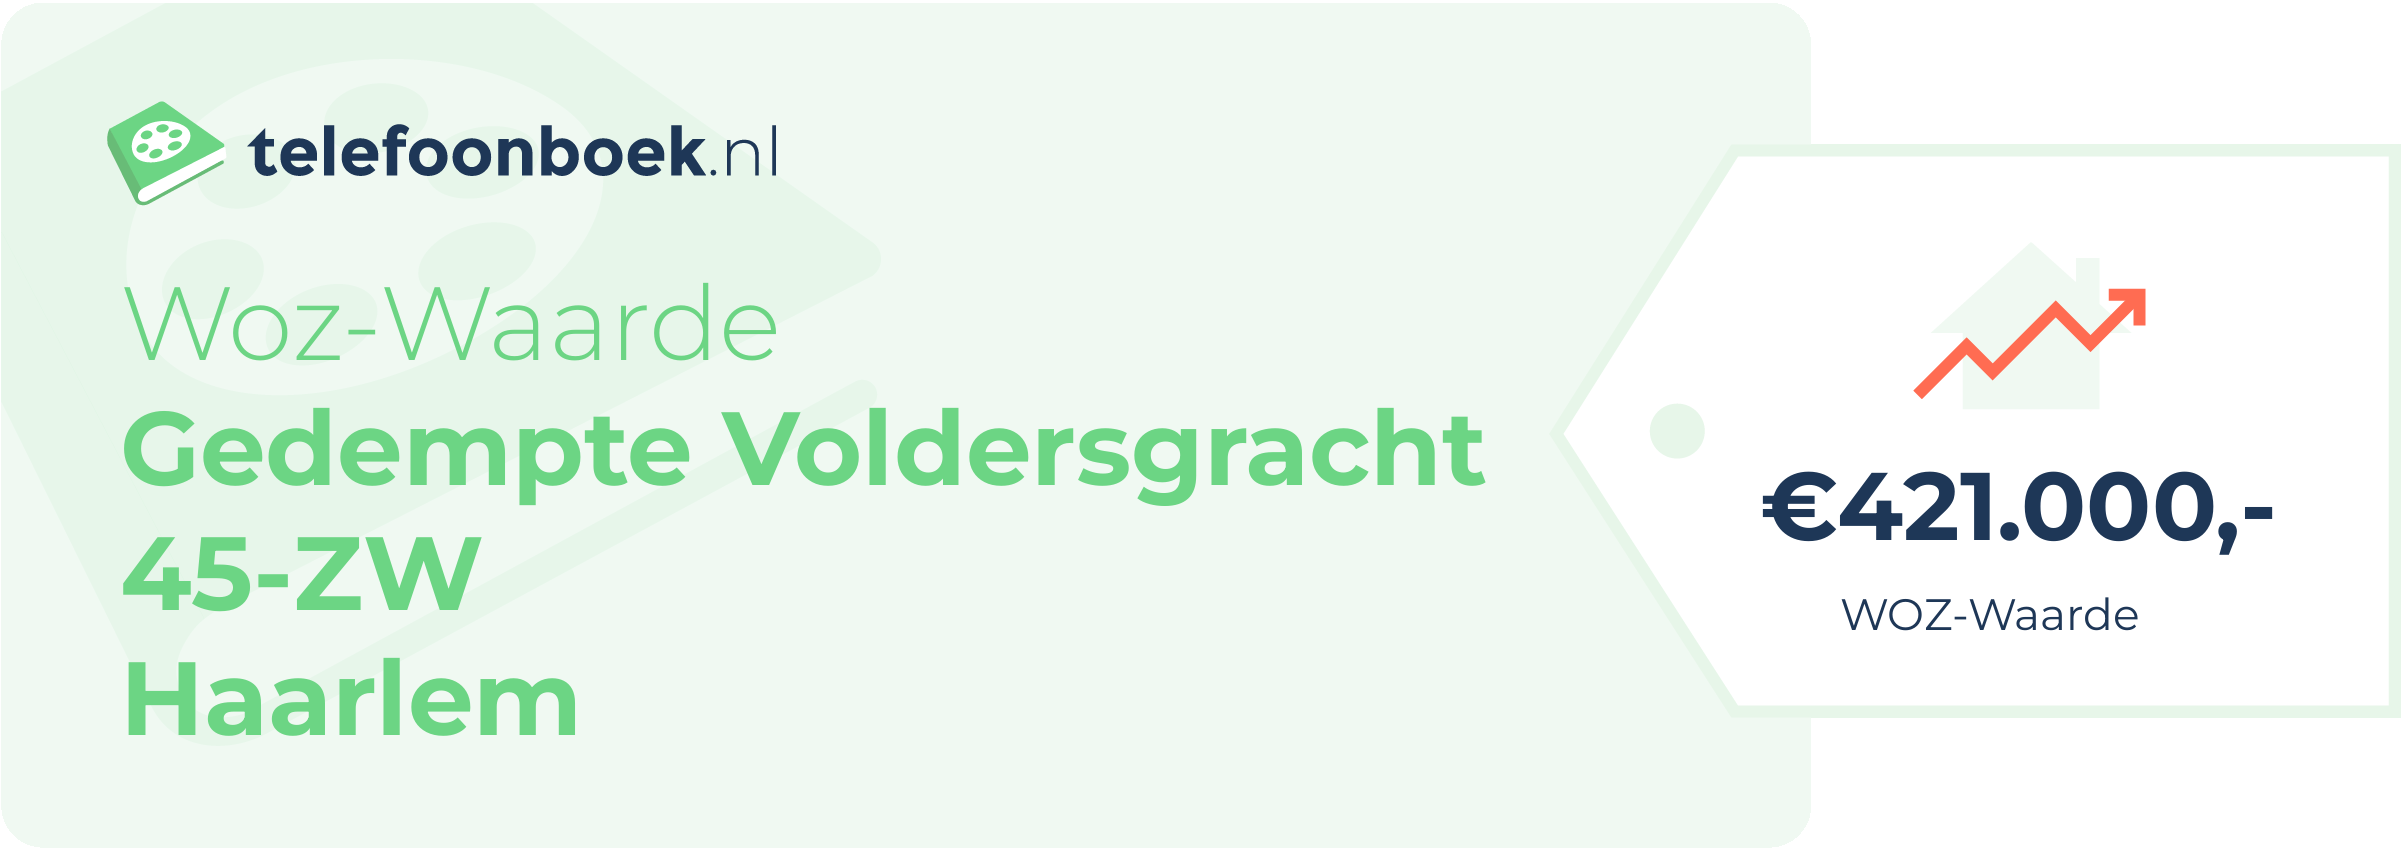 WOZ-waarde Gedempte Voldersgracht 45-ZW Haarlem